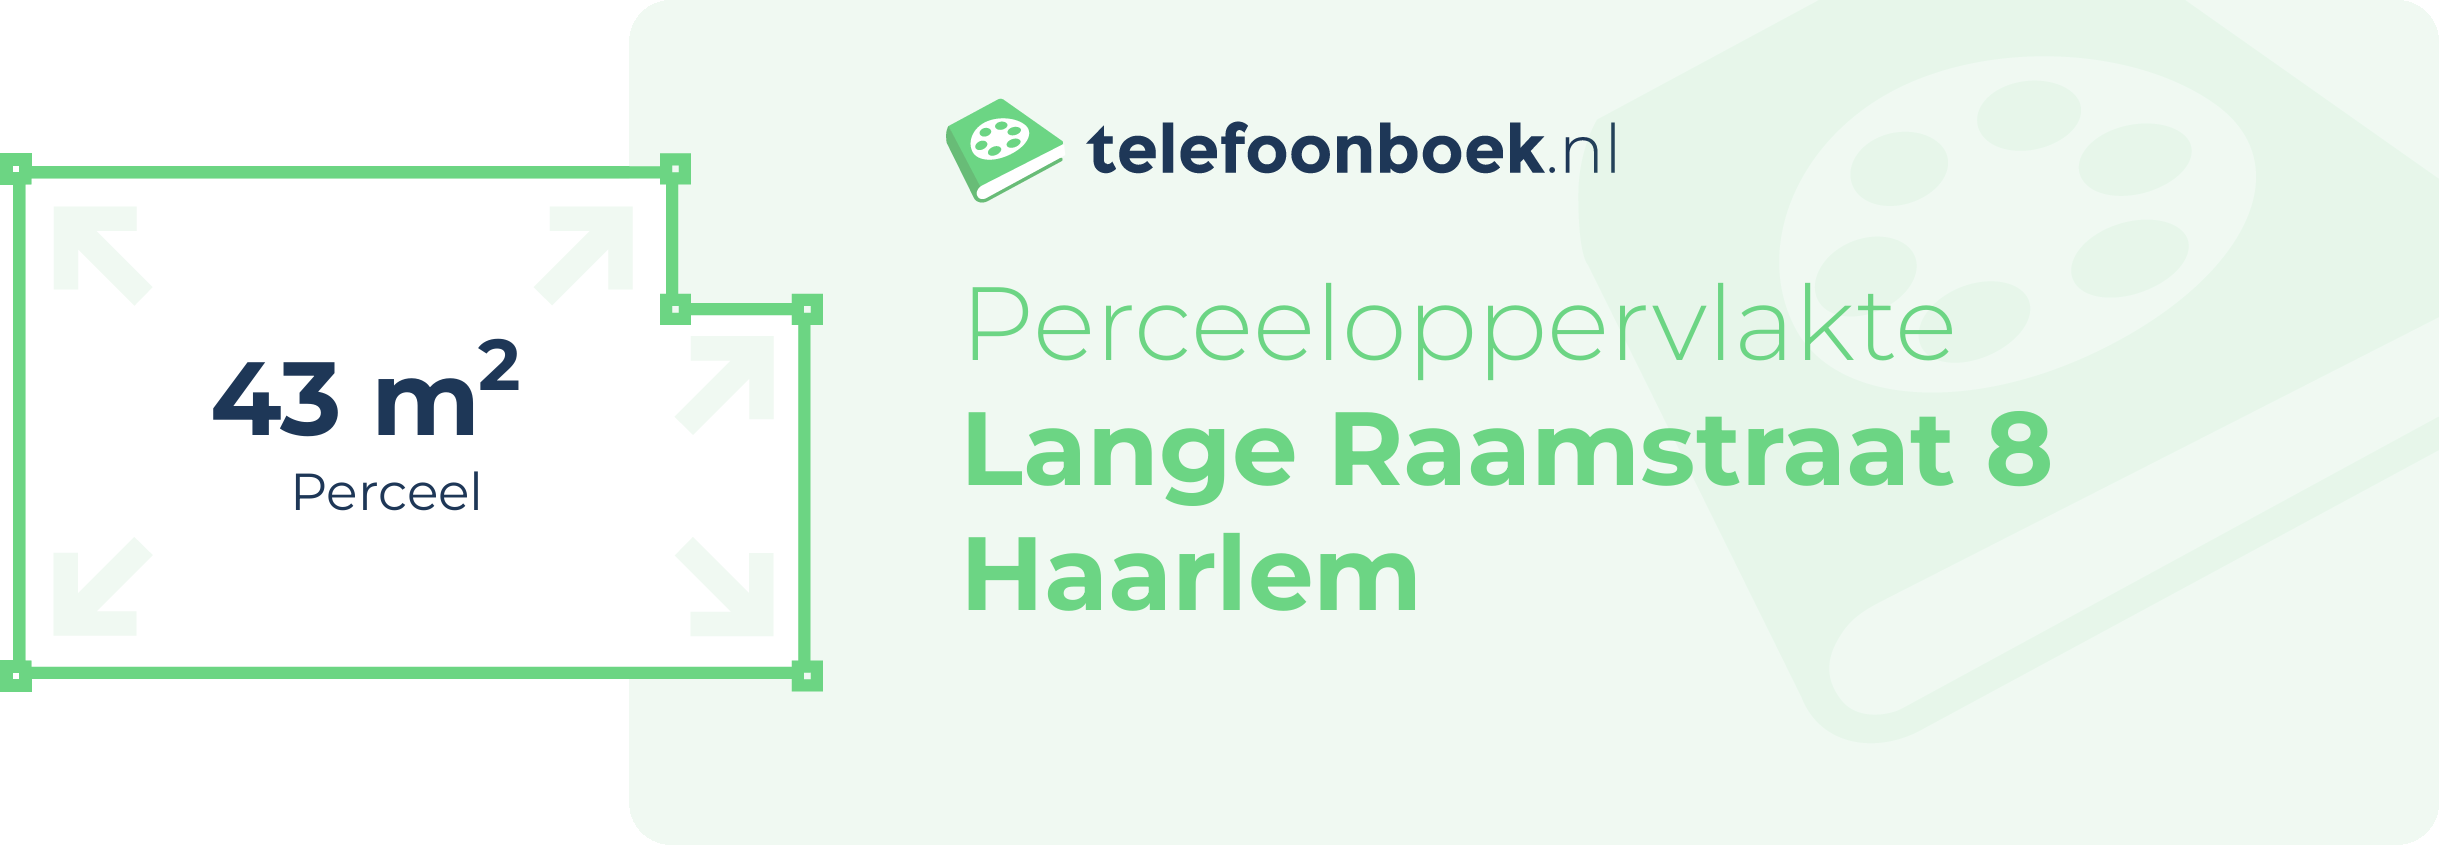 Perceeloppervlakte Lange Raamstraat 8 Haarlem